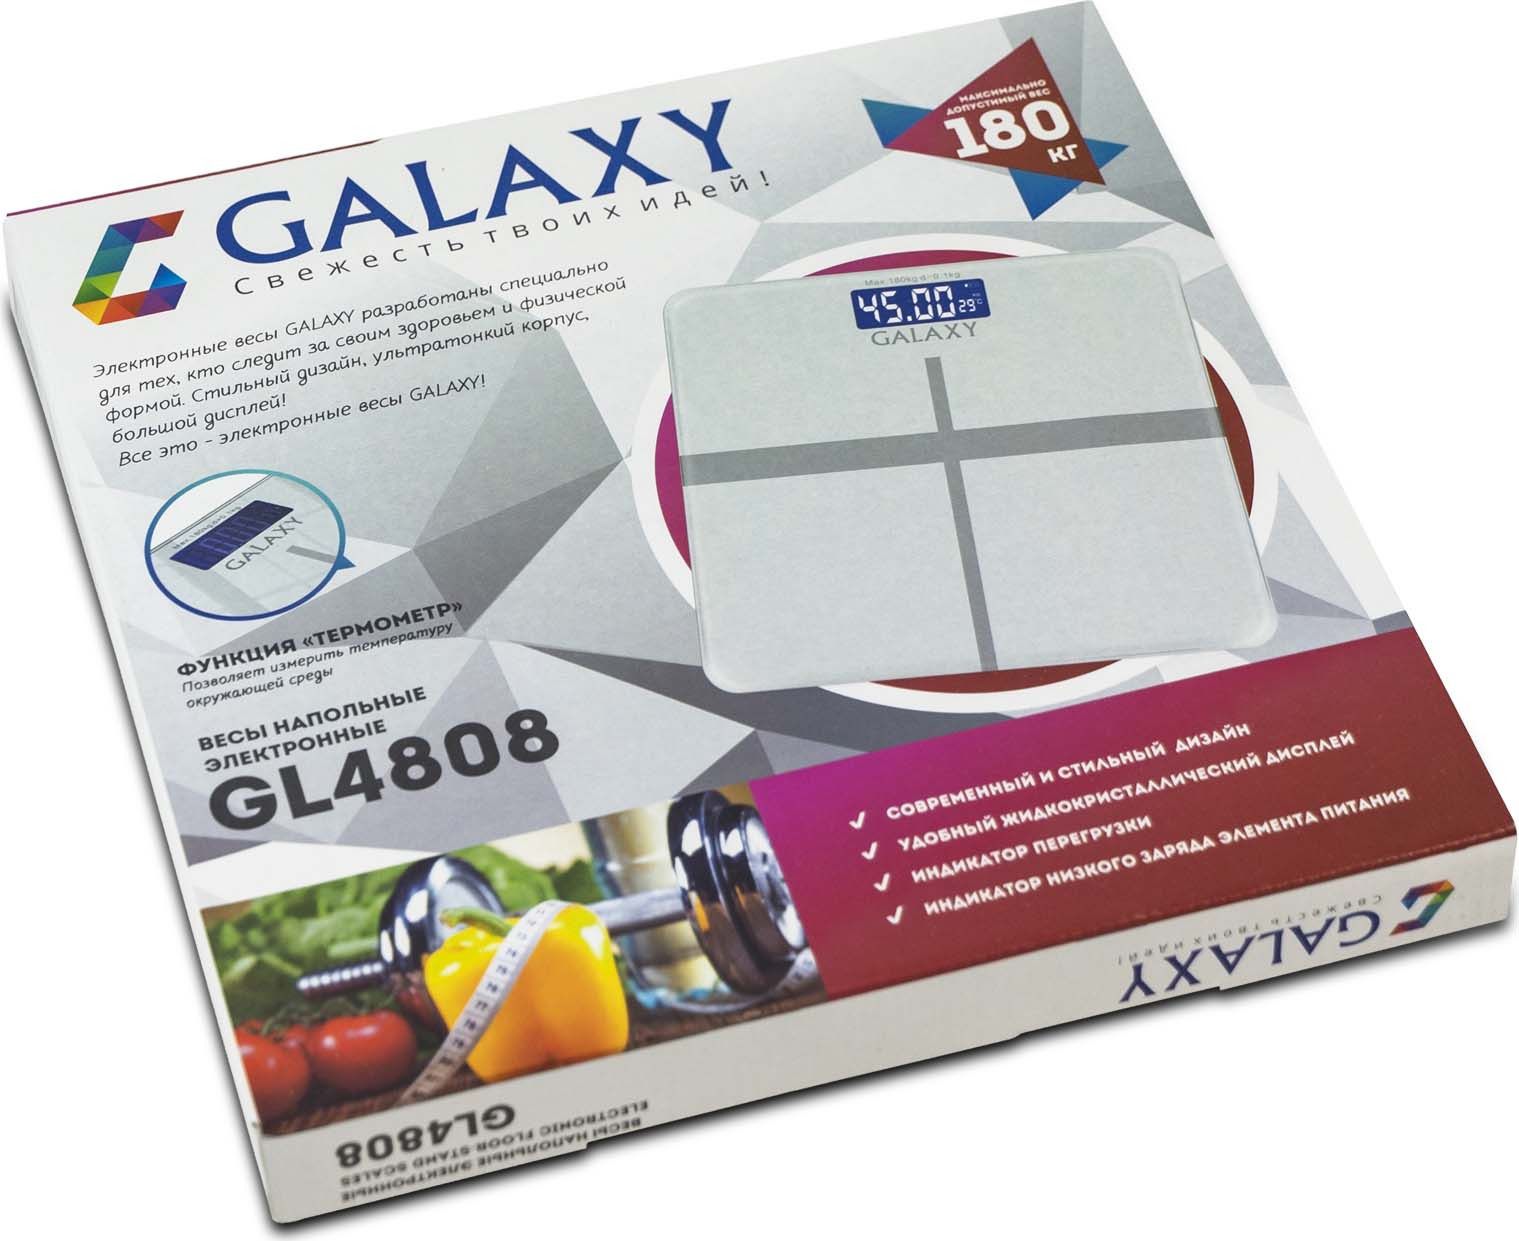   Galaxy GL 4808, :  